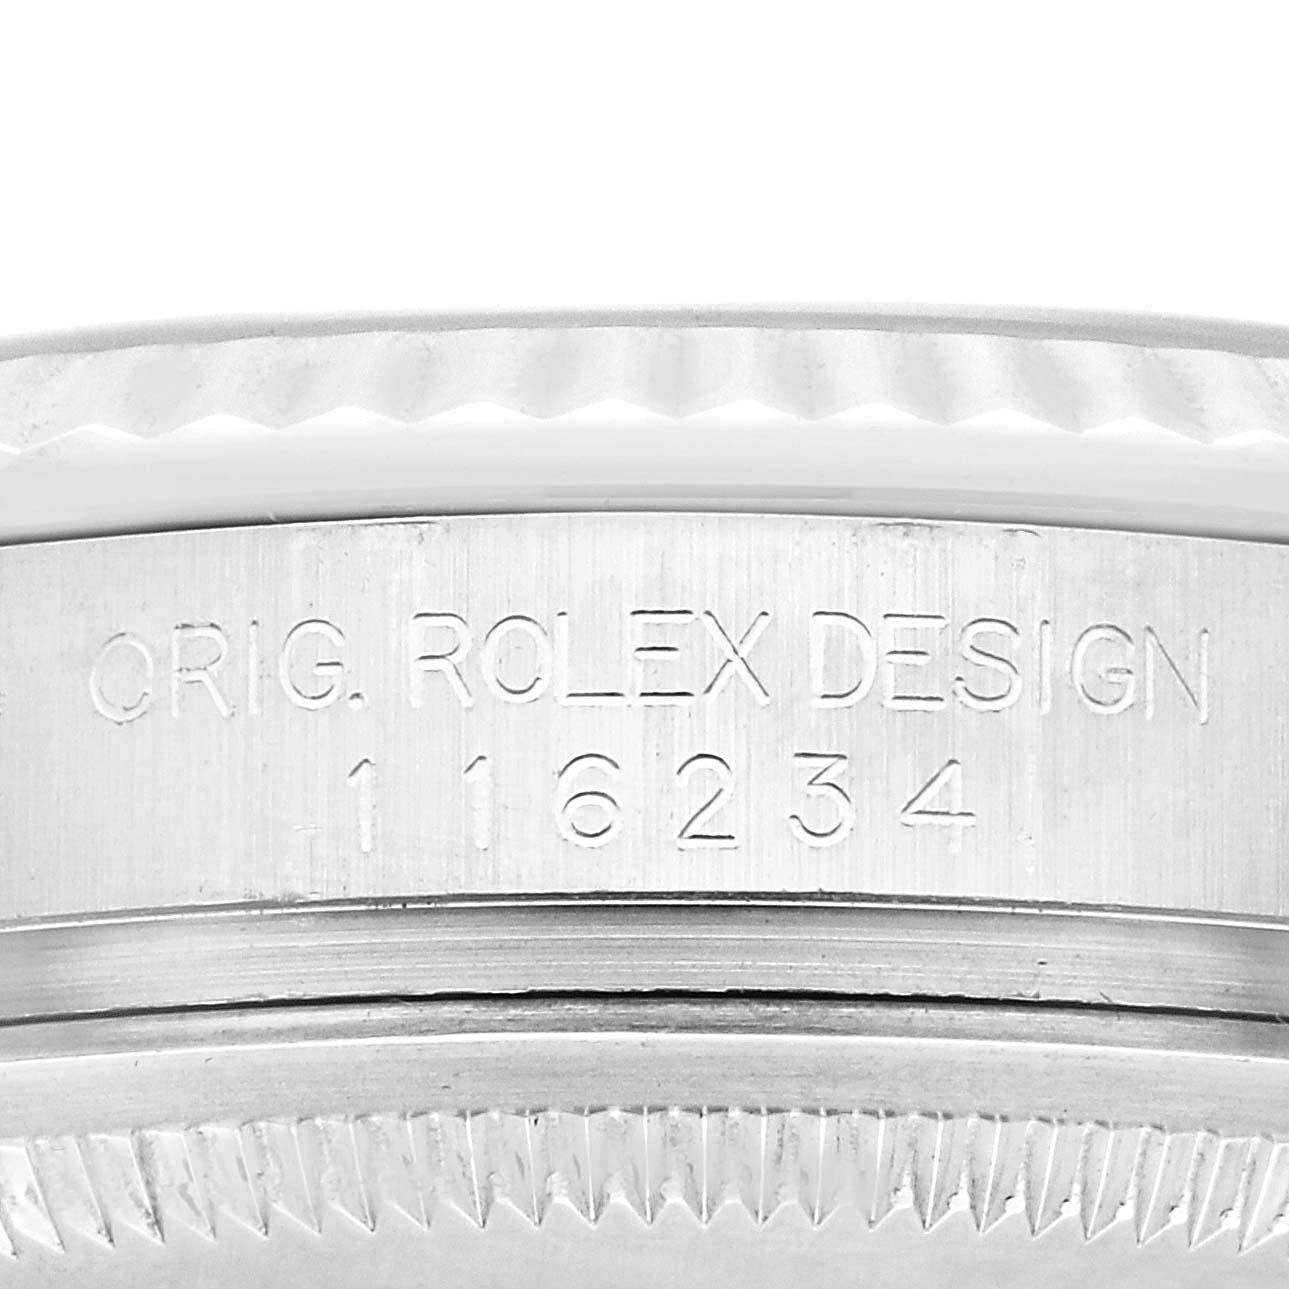 Rolex Datejust Steel White Gold Silver Dial Mens Watch 116234 Box Papers. Mouvement à remontage automatique certifié officiellement chronomètre. Boîtier en acier inoxydable de 36.0 mm de diamètre.  Logo Rolex sur une couronne. Lunette cannelée en or